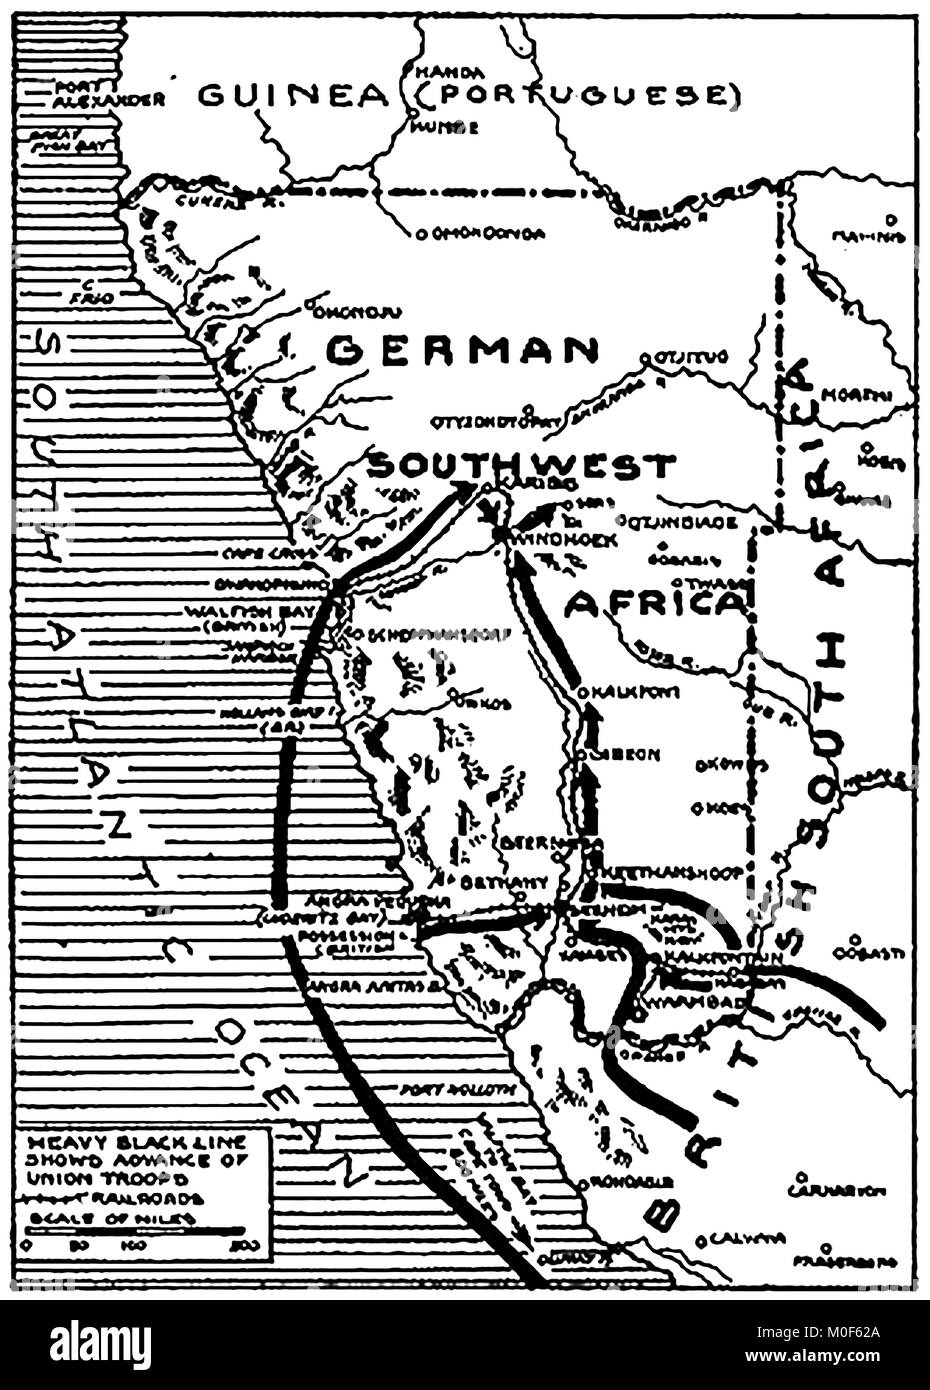 La prima guerra mondiale - Un 1917 mappa che mostra attività militare nel 1914-1918 Prima Guerra Mondiale - Africa del sud-ovest e la sua conquista da parte di truppe dell'Unione sotto generale Botha. In Africa orientale la campagna Foto Stock